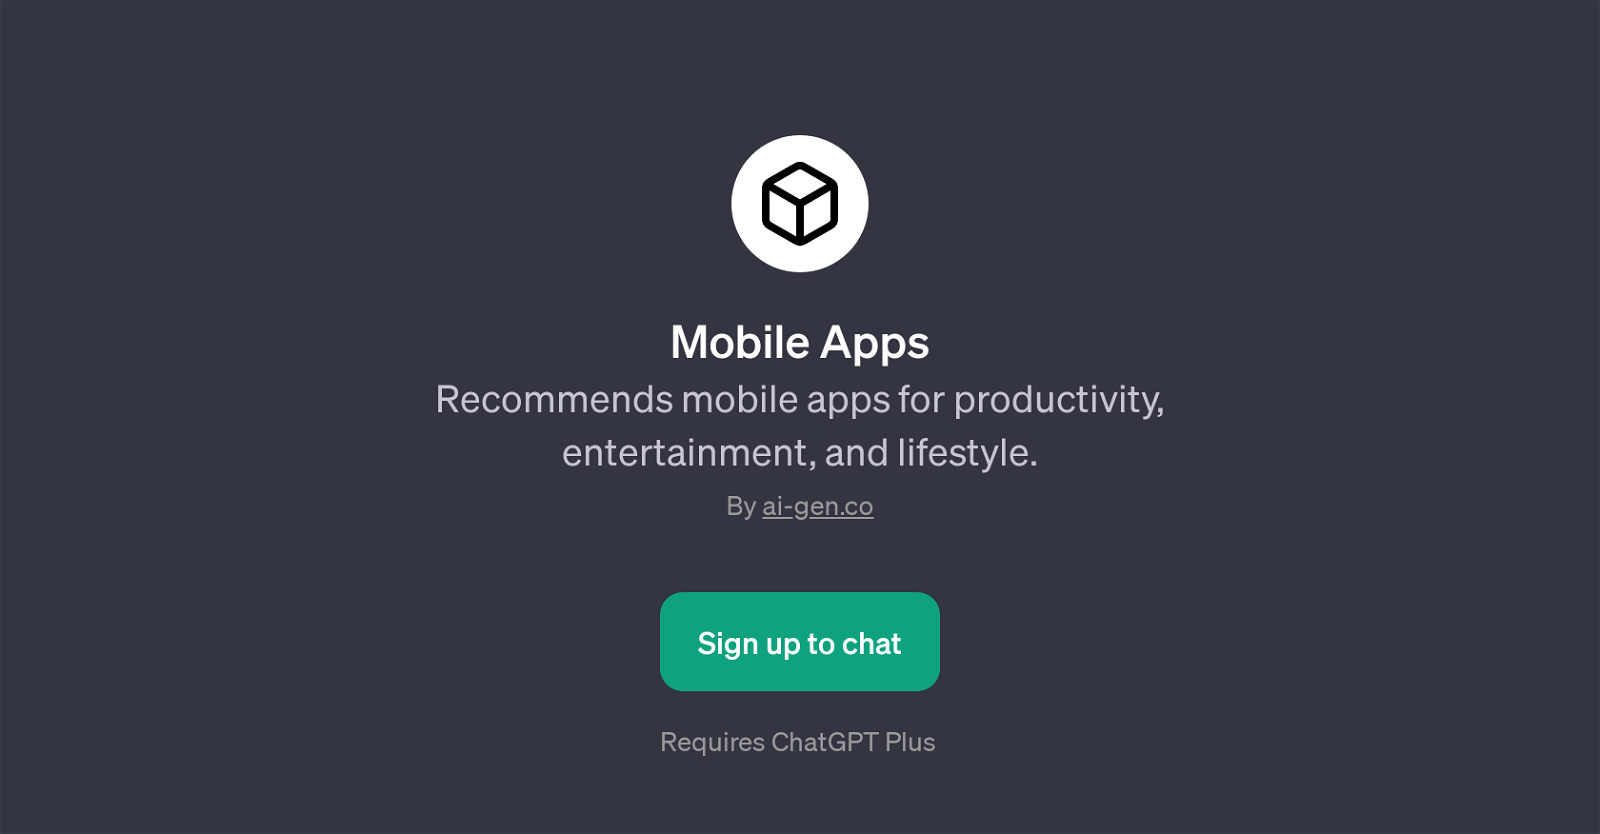 Mobile Apps website